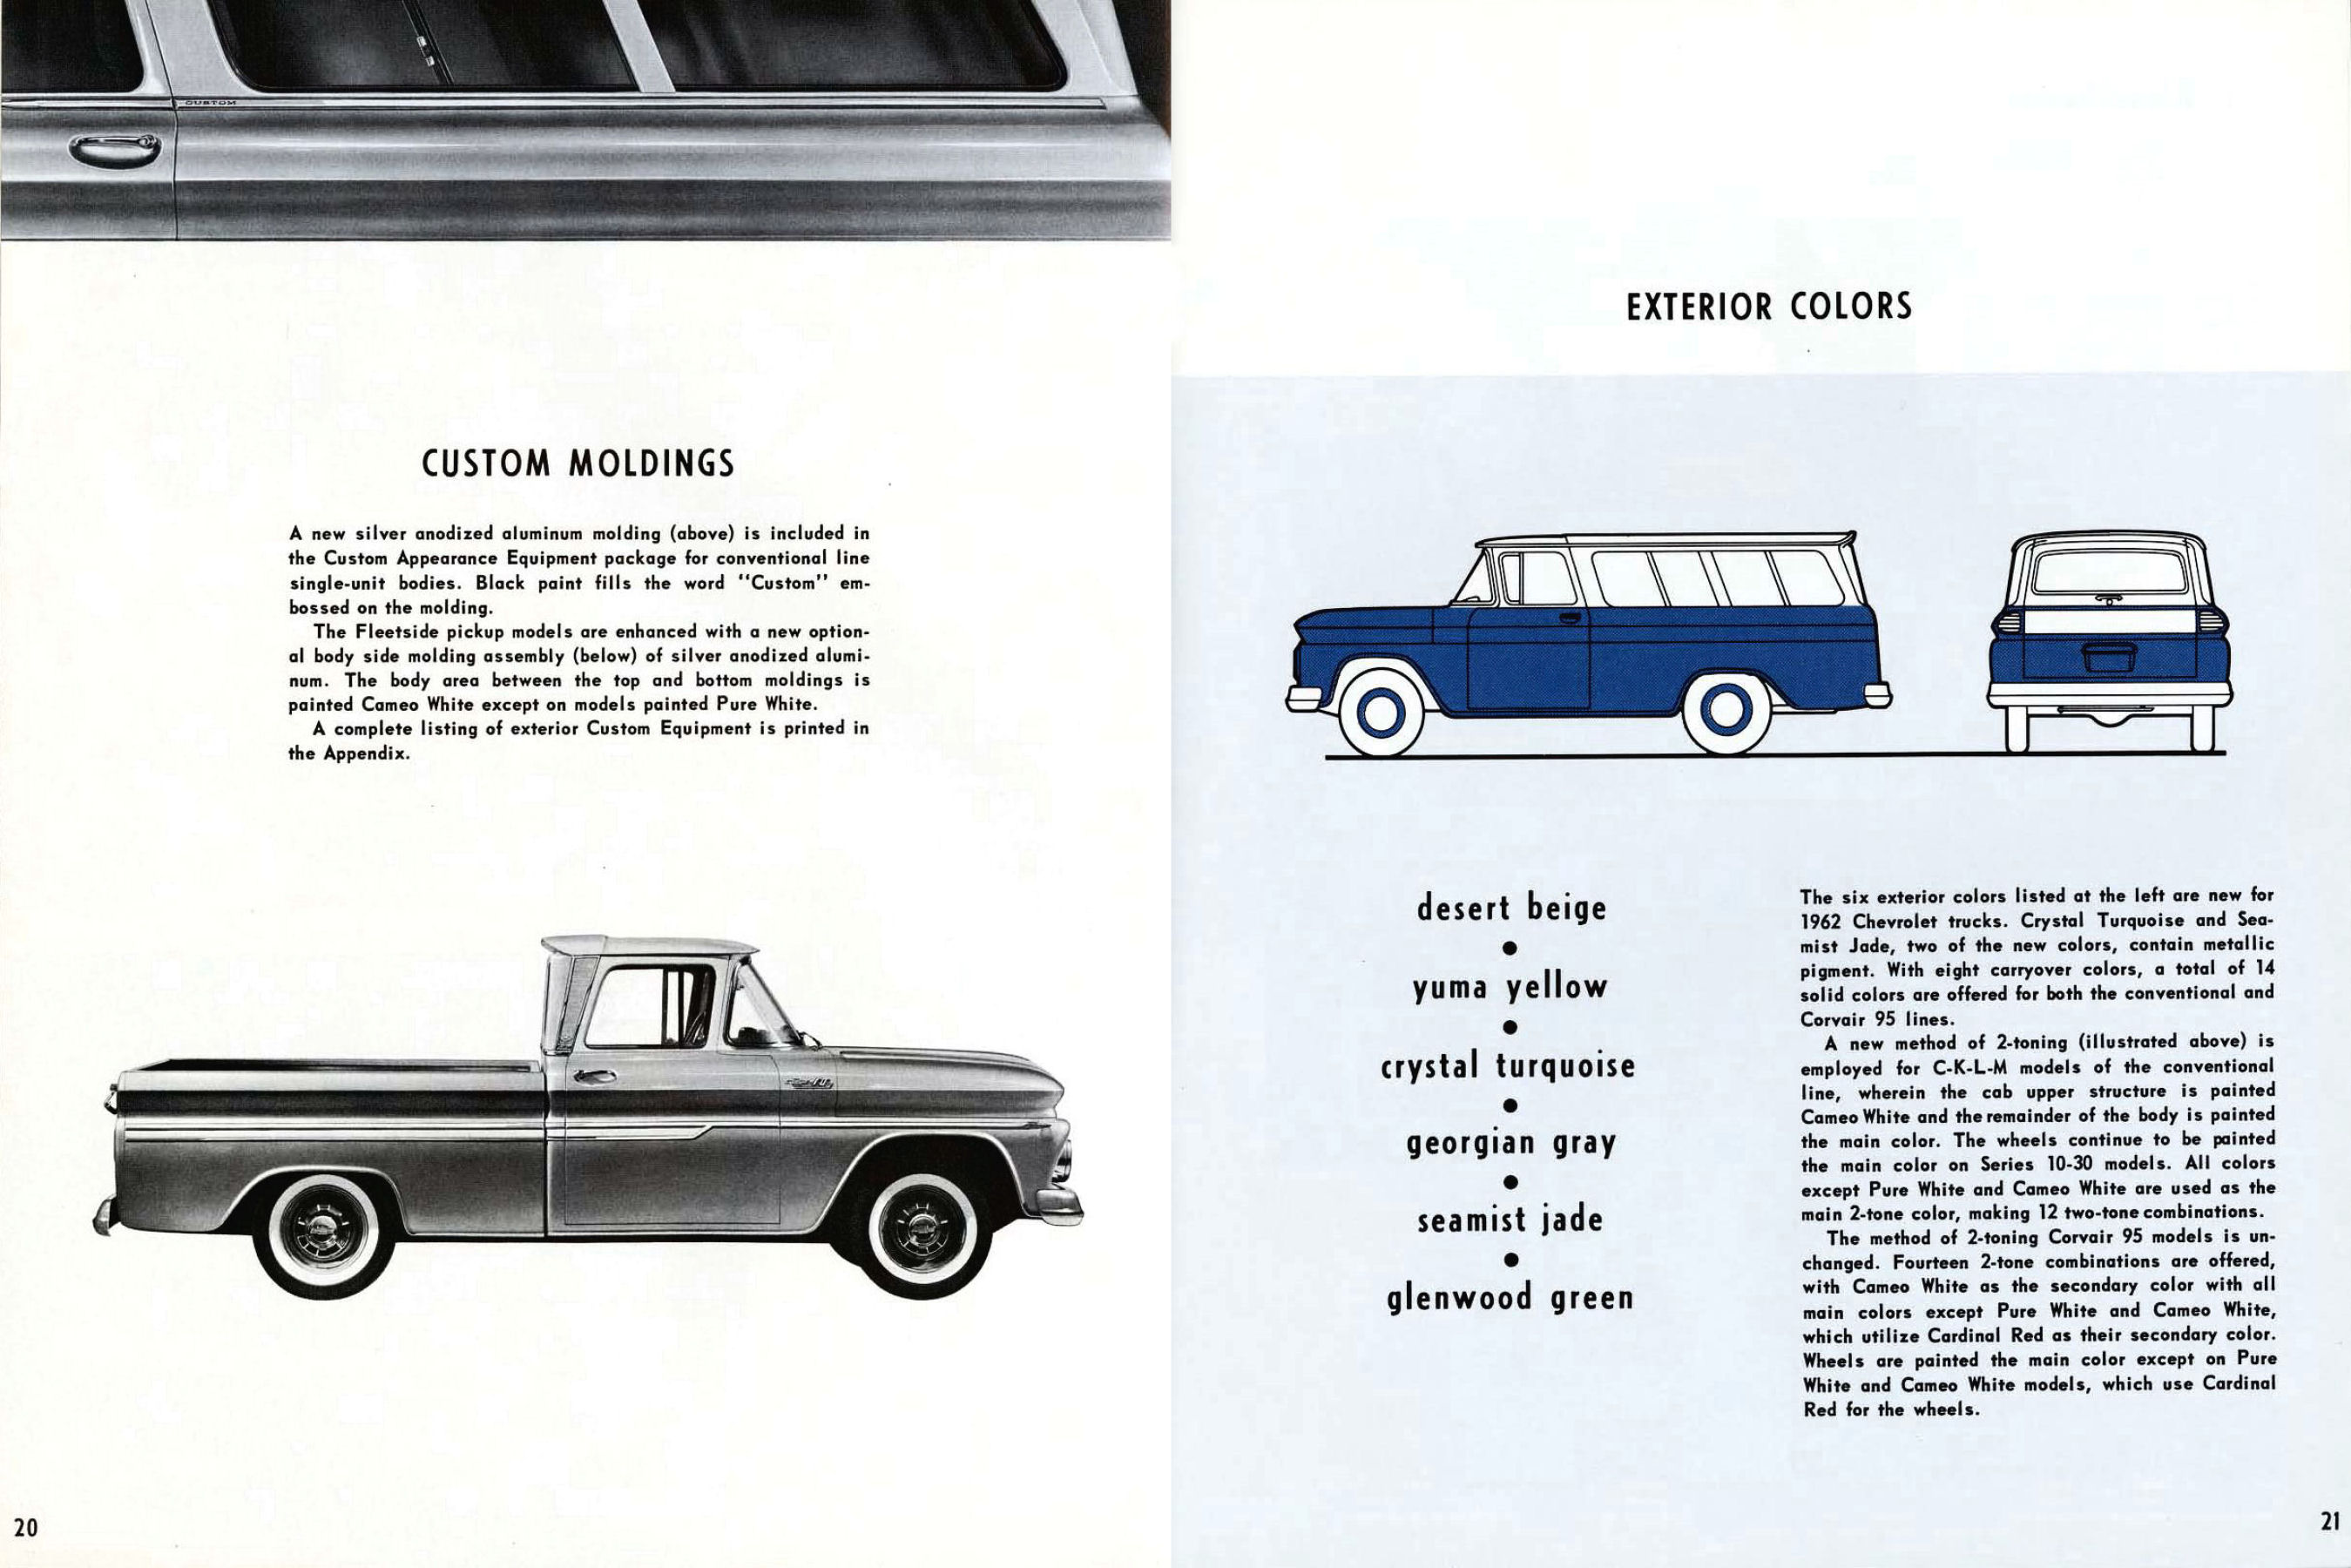 1962 Chevrolet Truck Engineering Features-20-21